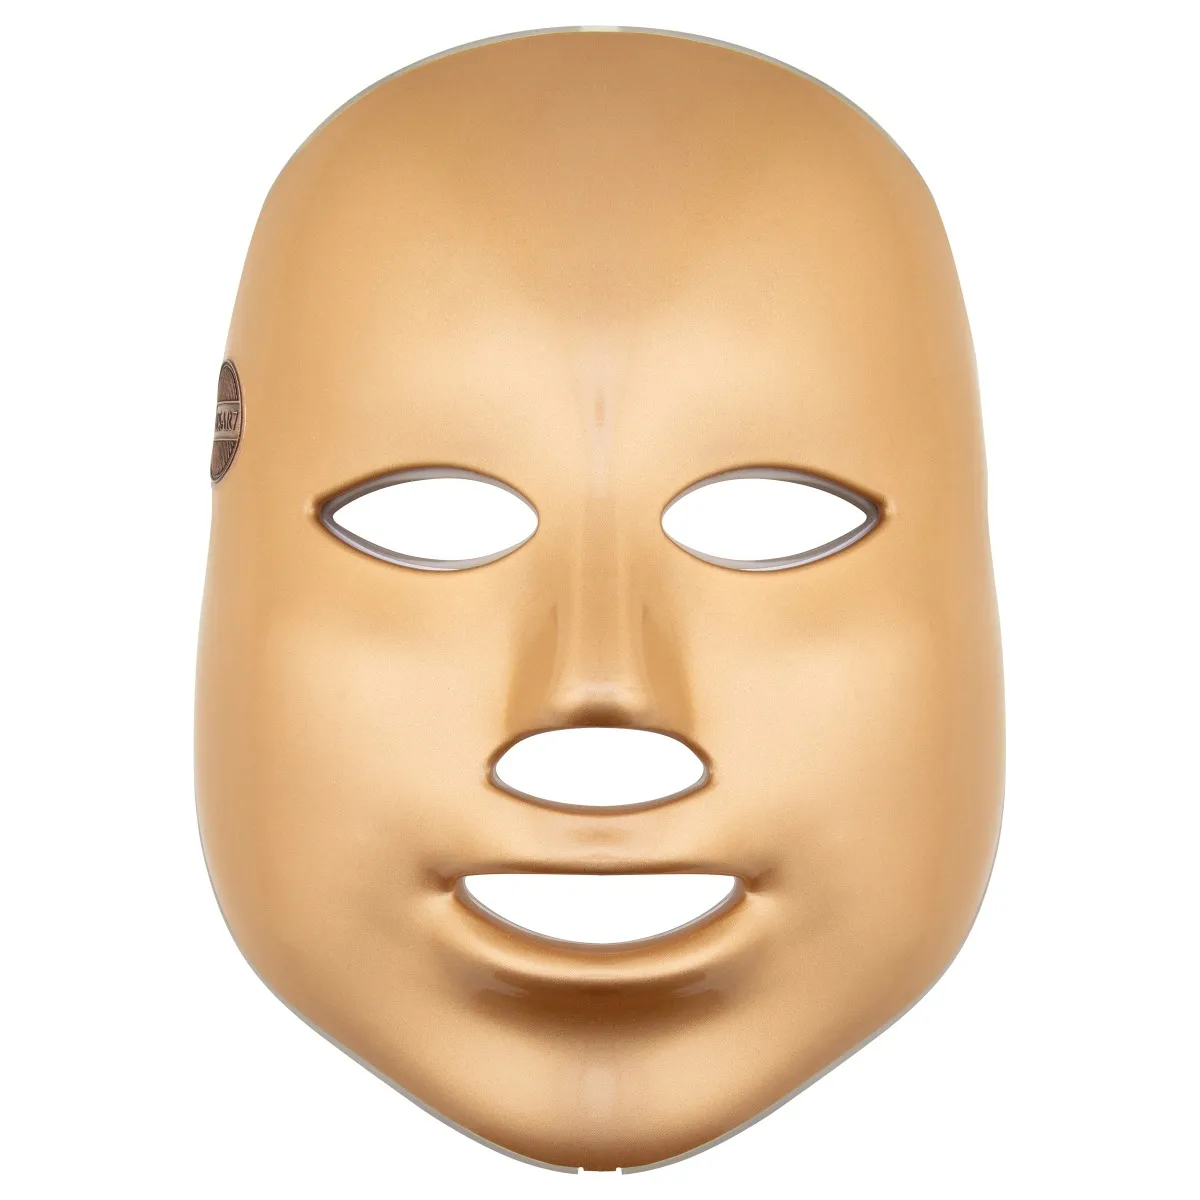 Palsar7 Ošetrujúca LED maska na tvár (zlatá) 1×1 ks, ošetrujúca LED maska na tvár